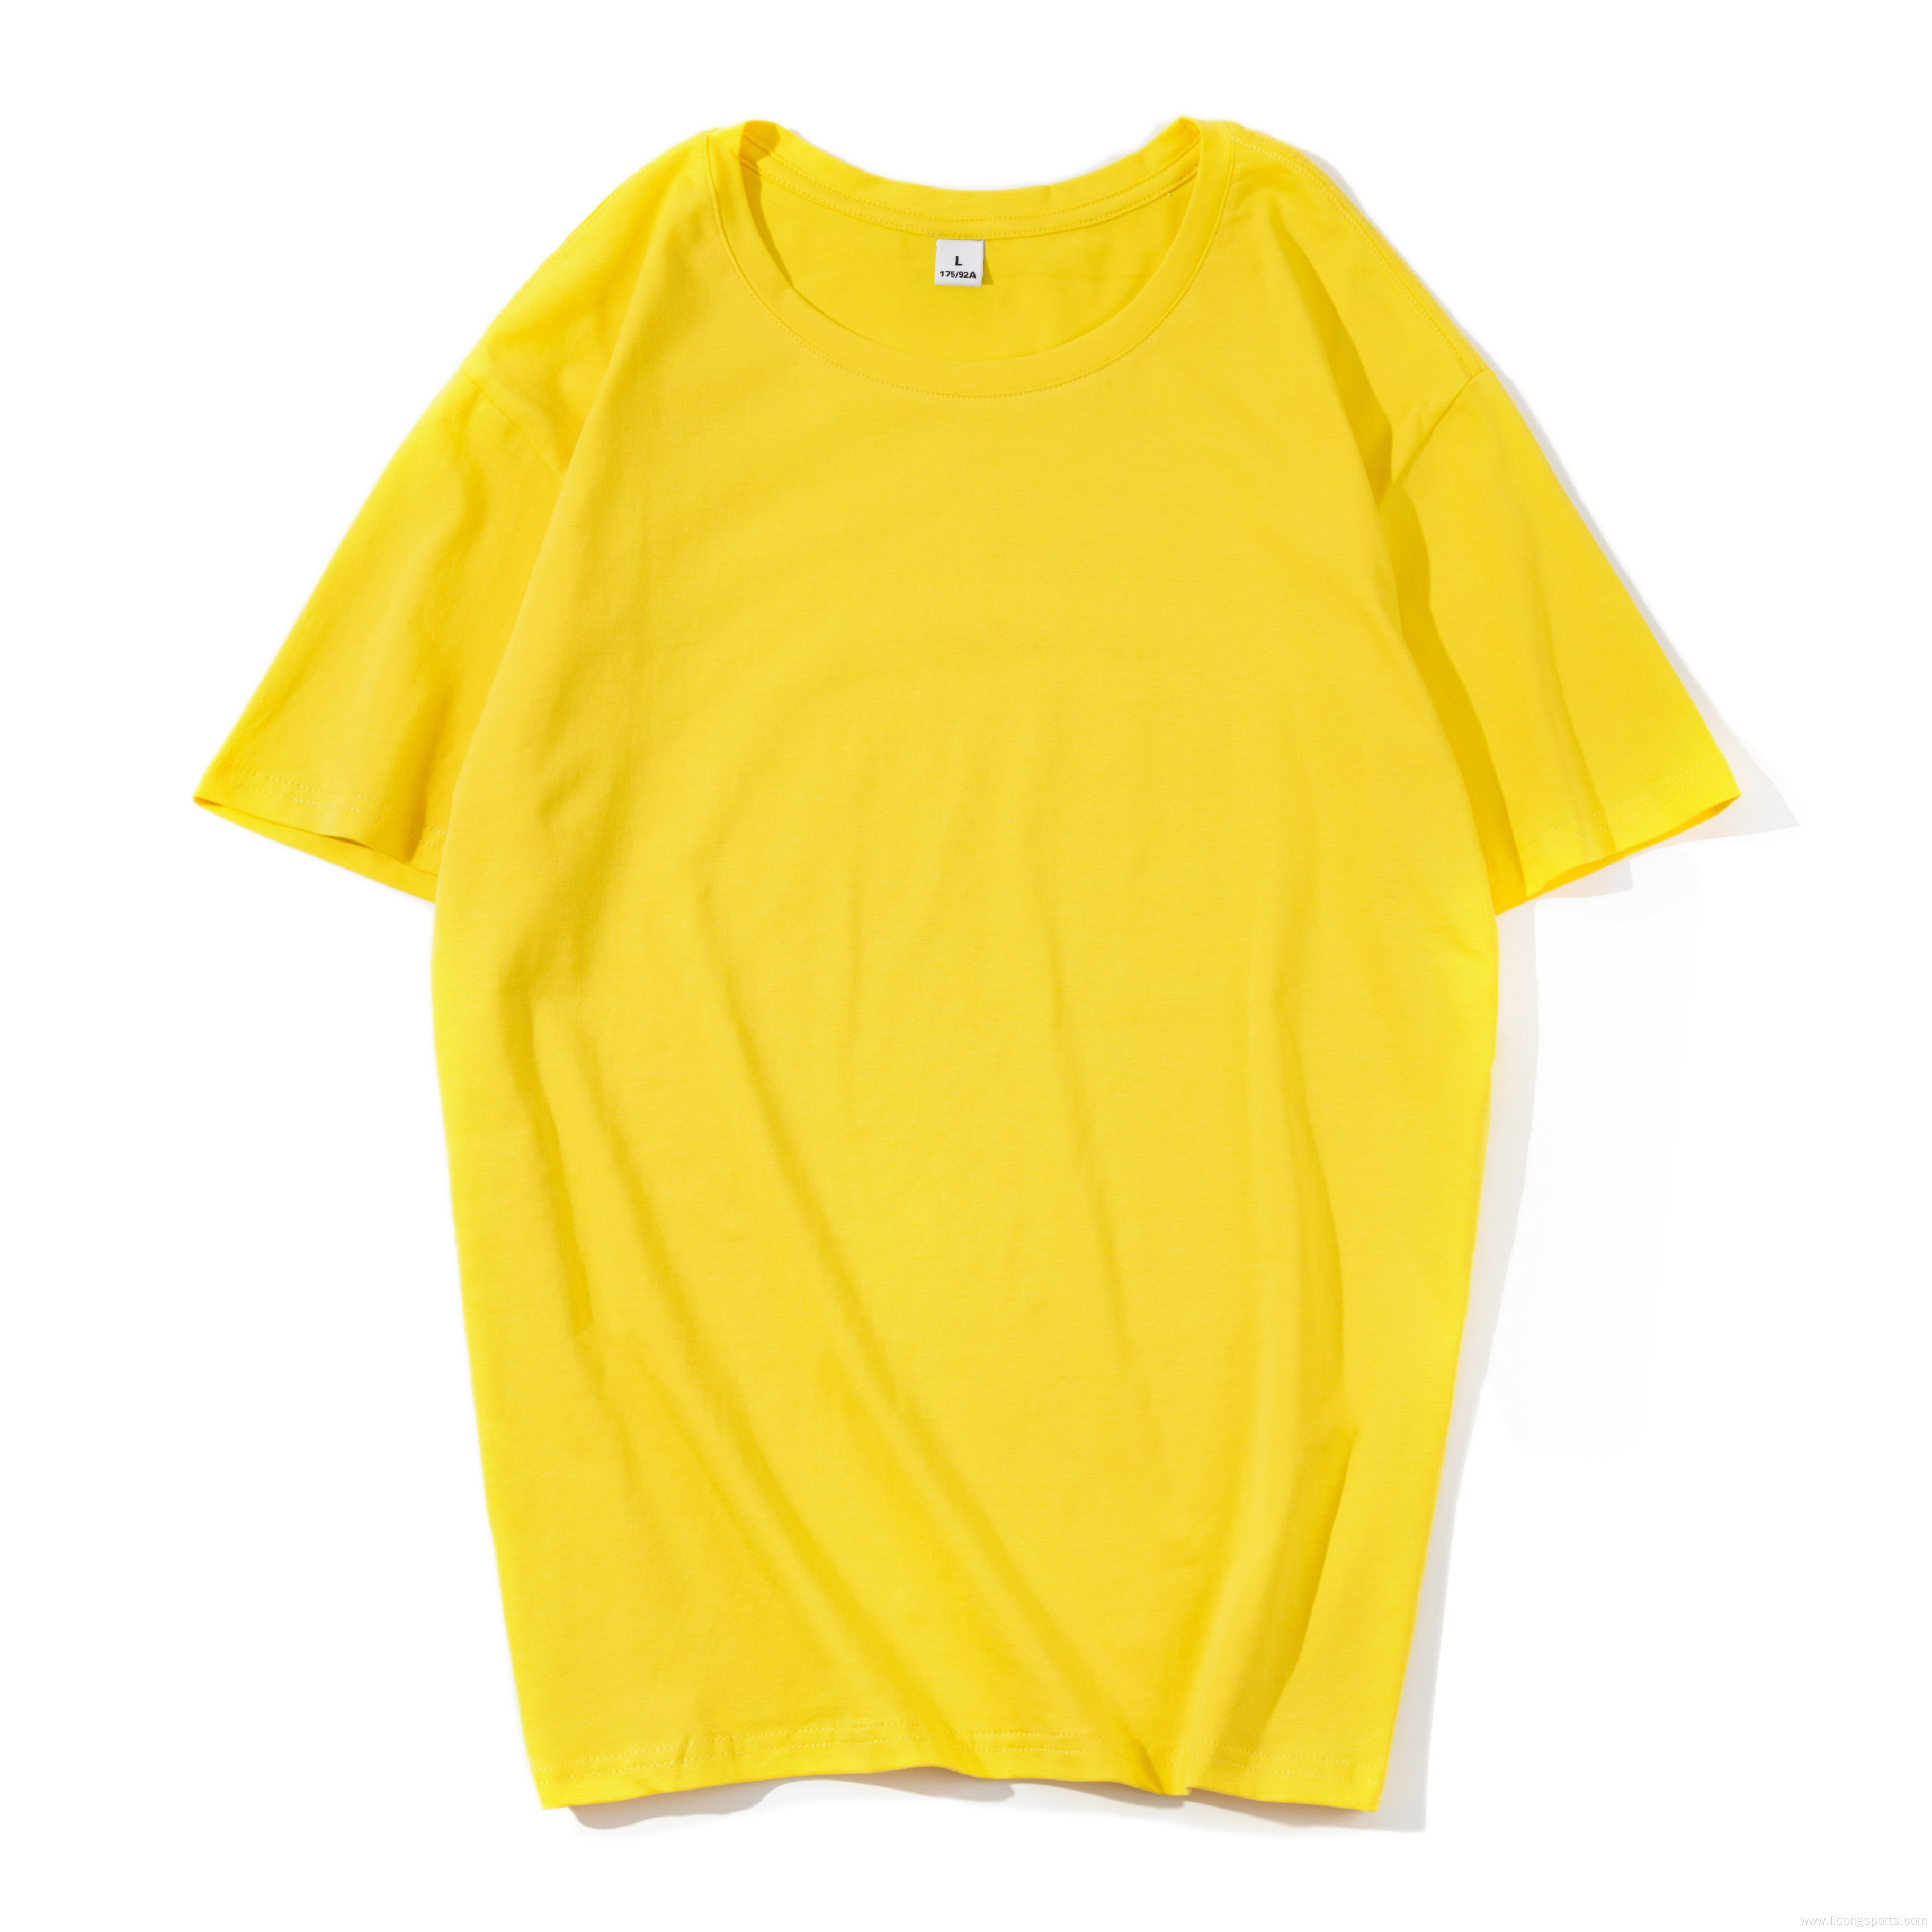 New Style Unisex Plain Cotton Fashion Men's T-shirts